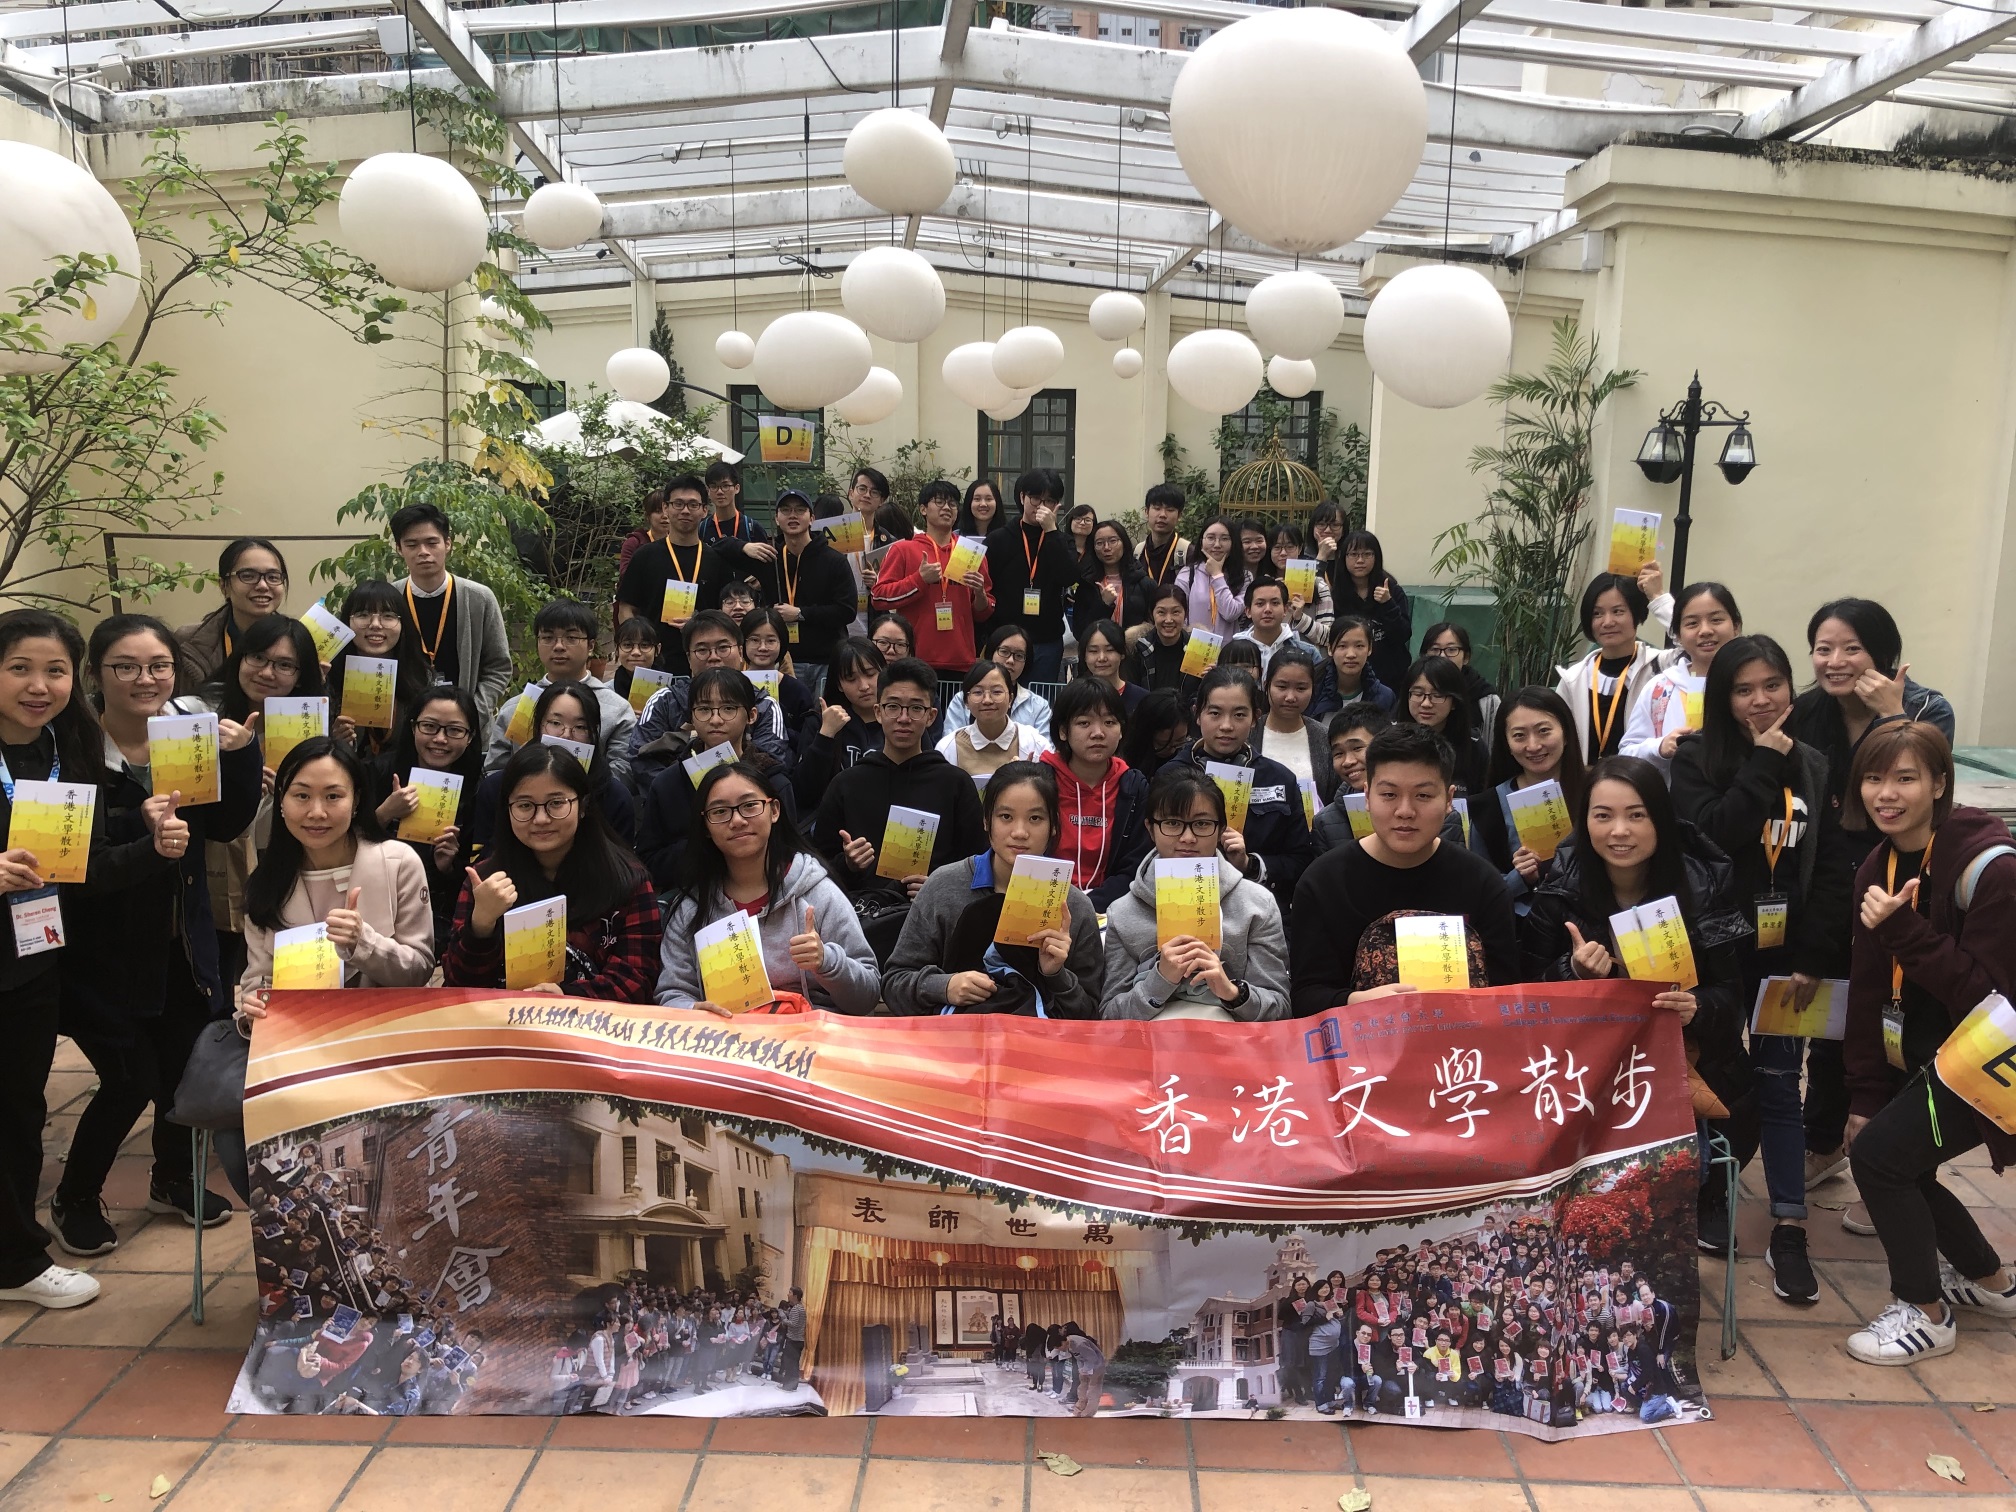 「香港文學散步2019」的導賞員和參加者於講座後一起拍照留念。